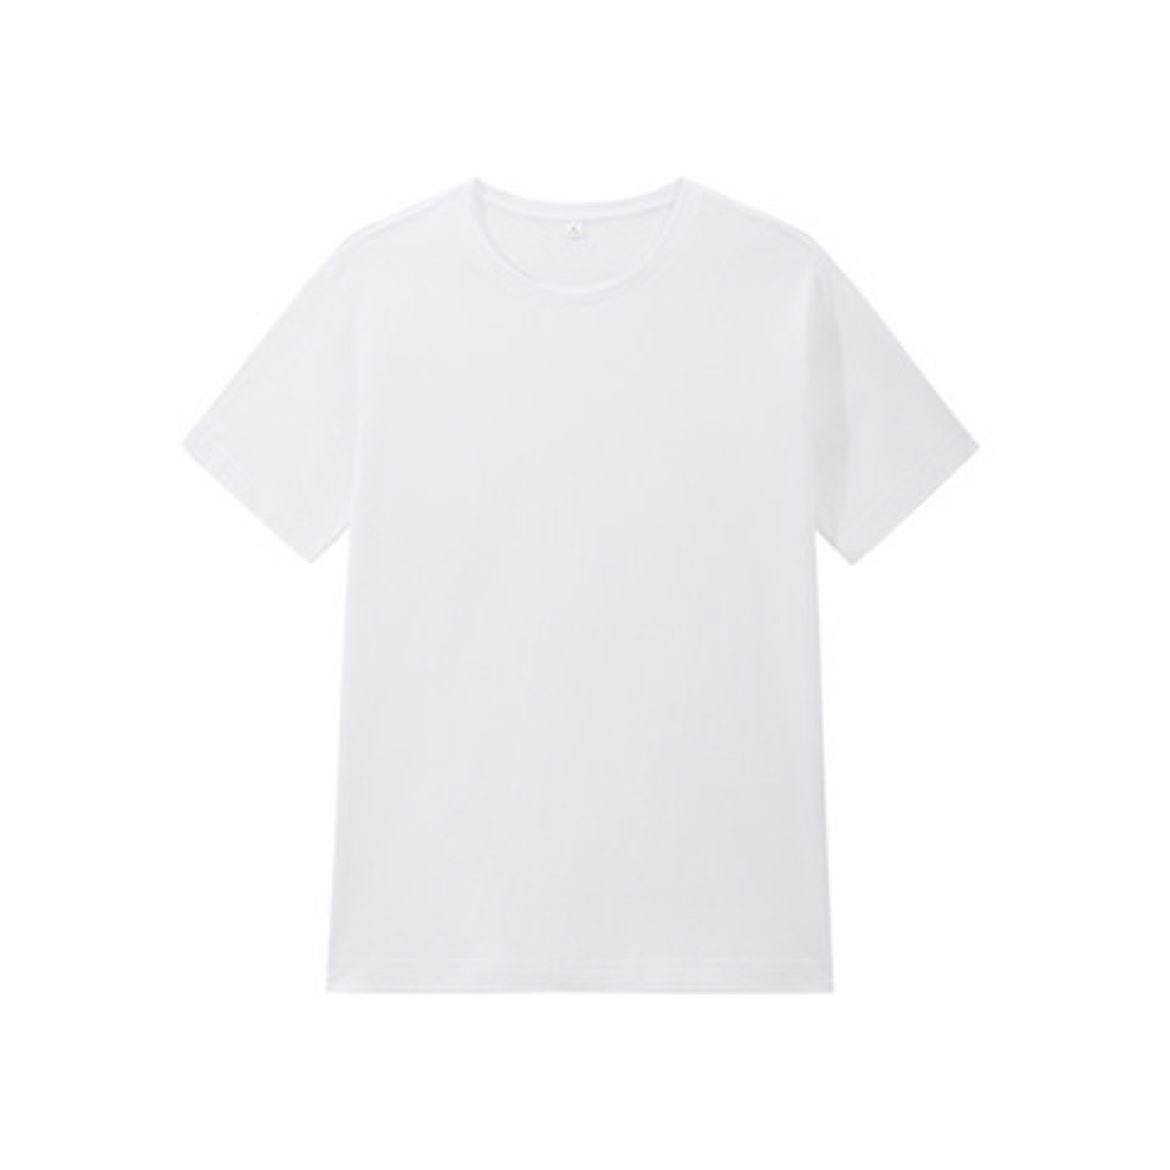 YANXUAN 网易严选 男女款圆领短袖T恤 4029236 白色（多尺码可选）*3件 87.98元（合29.33元/件）包邮